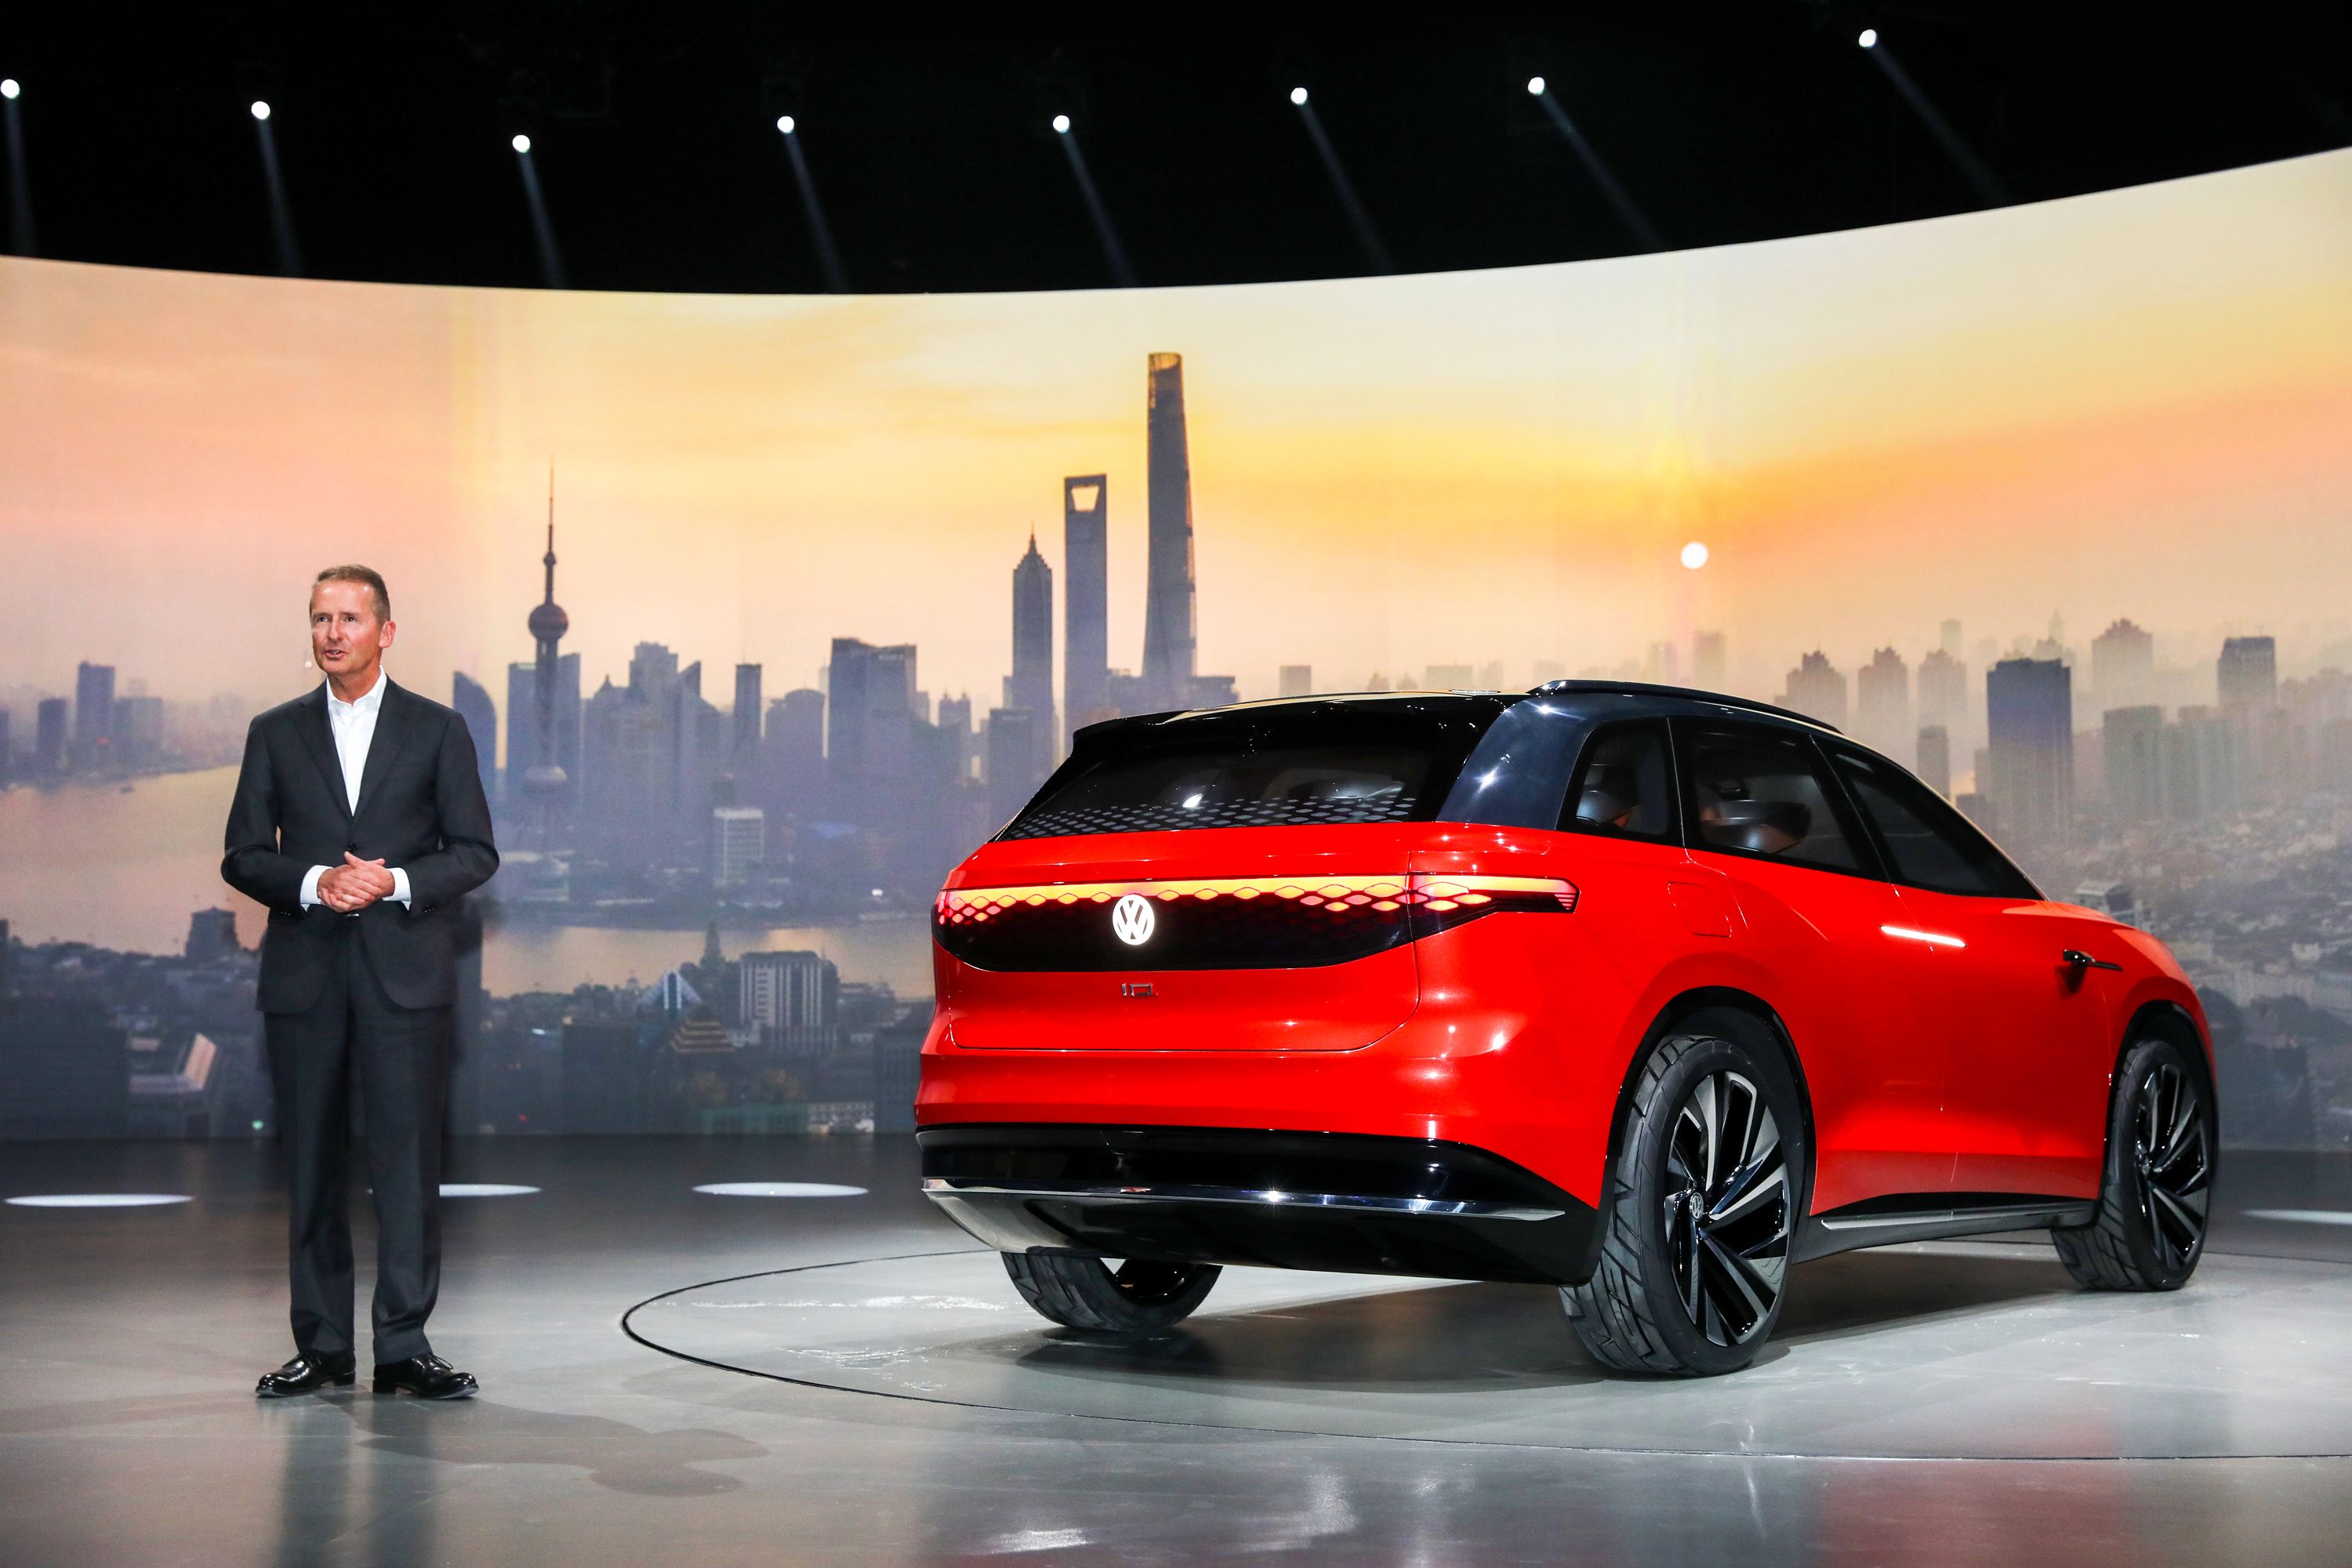 ID.ROOMZZ将中国首推 大众5款全新SUV集体亮相